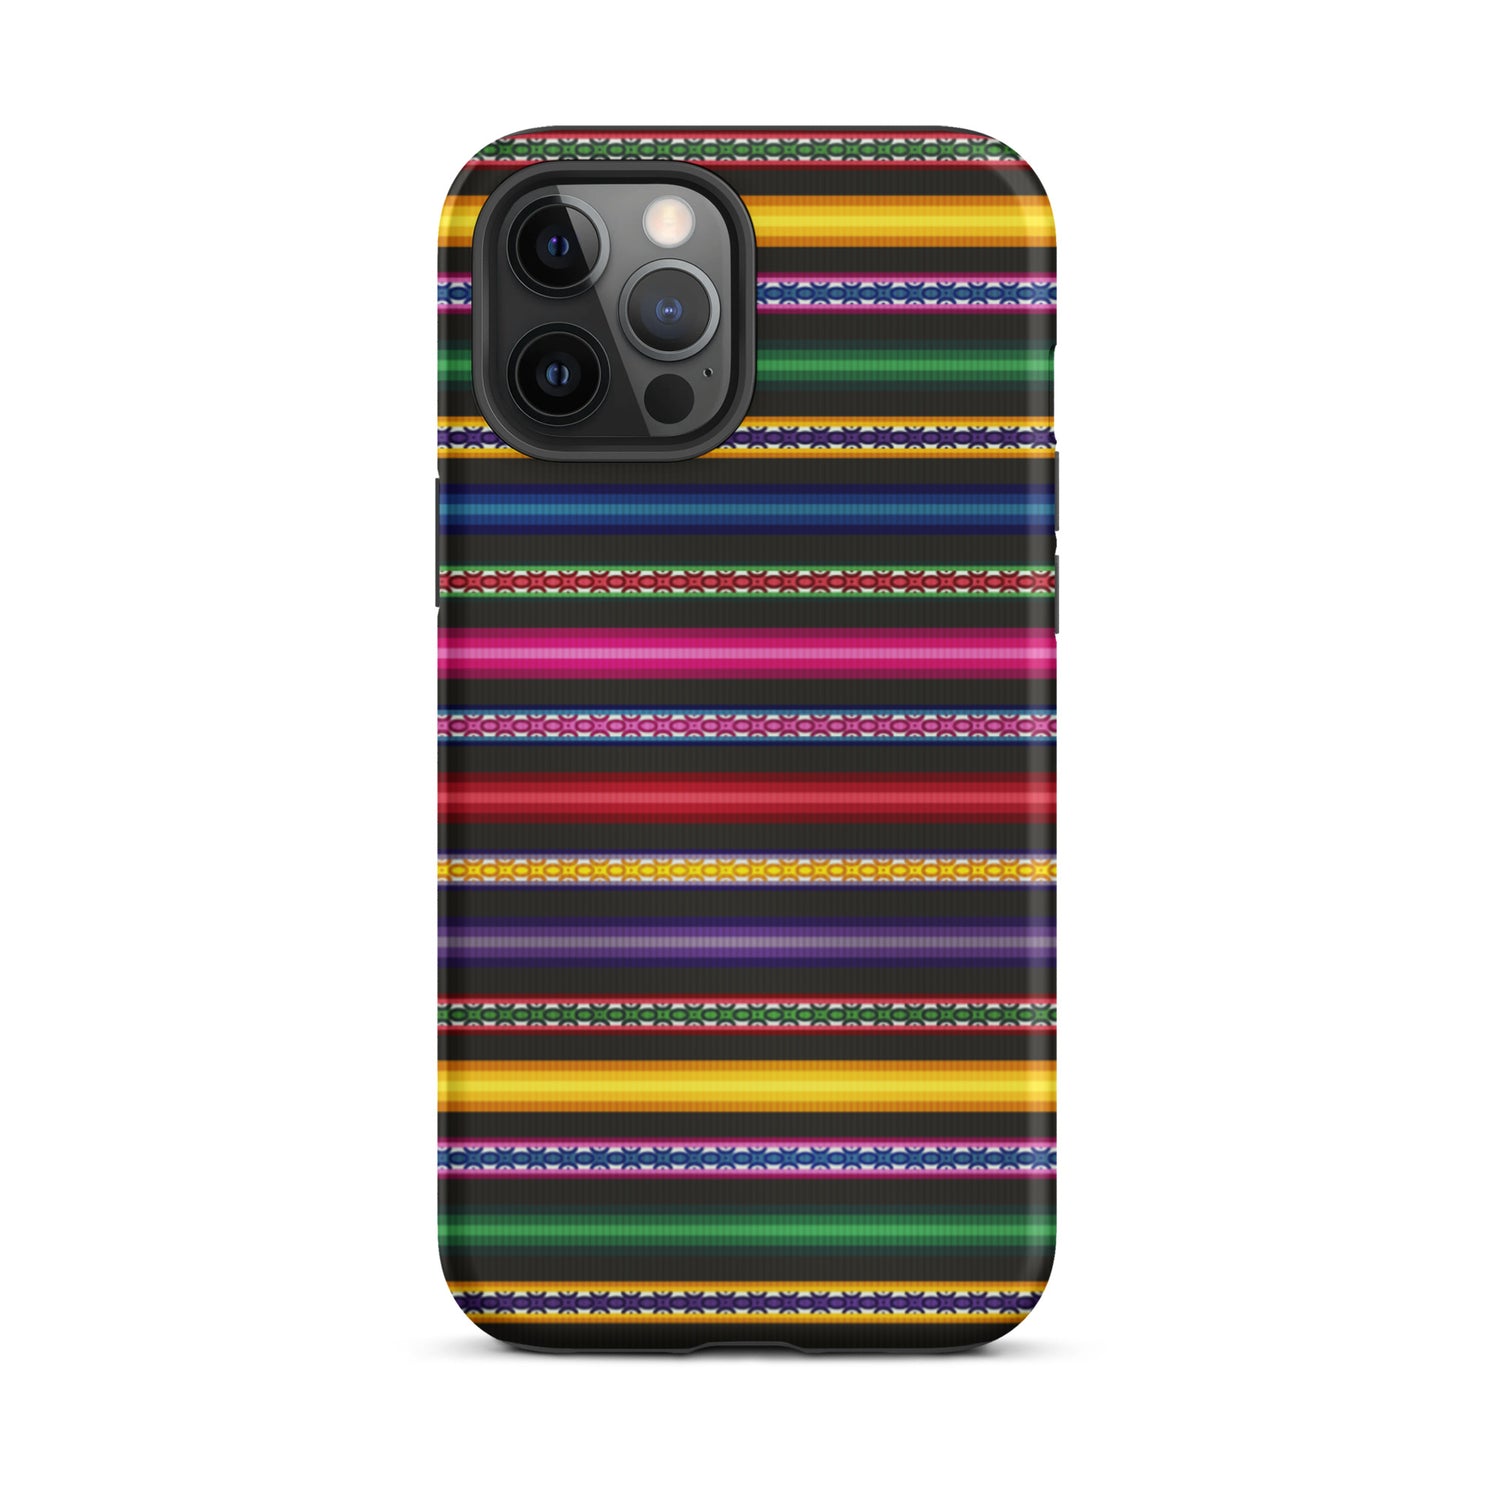 Peruvian Tough iPhone 12 Pro Max case